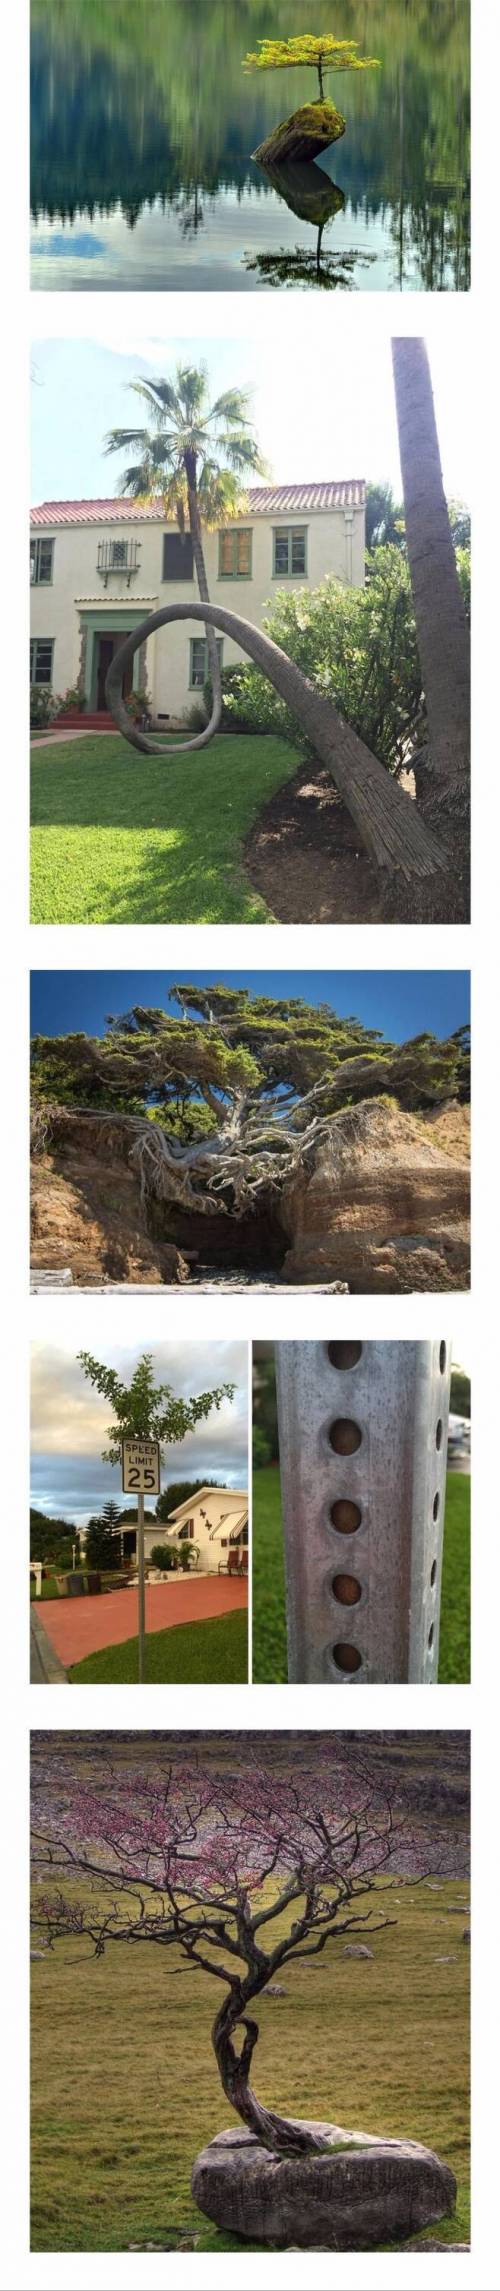 [스압] 놀라운 나무의 생명력.jpg